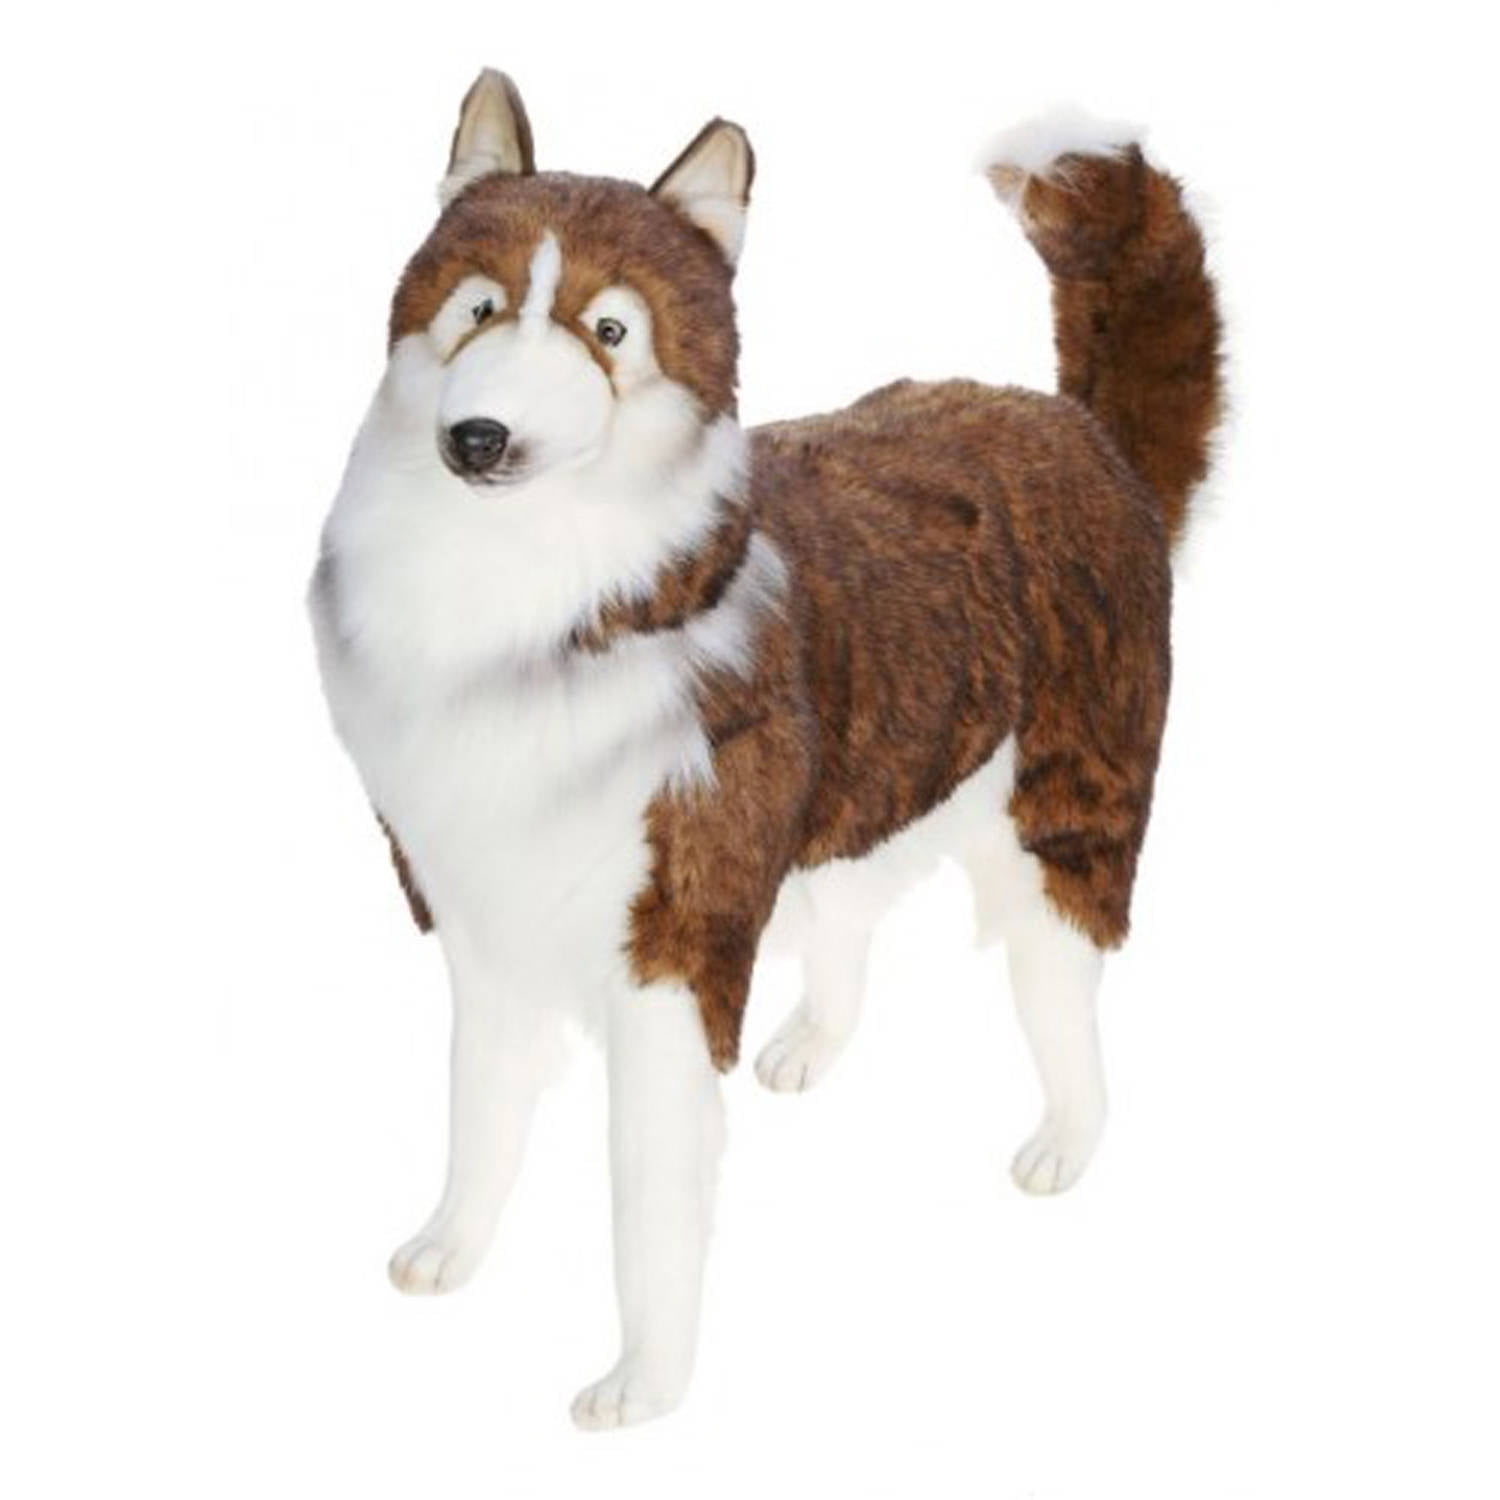 life size dog plush